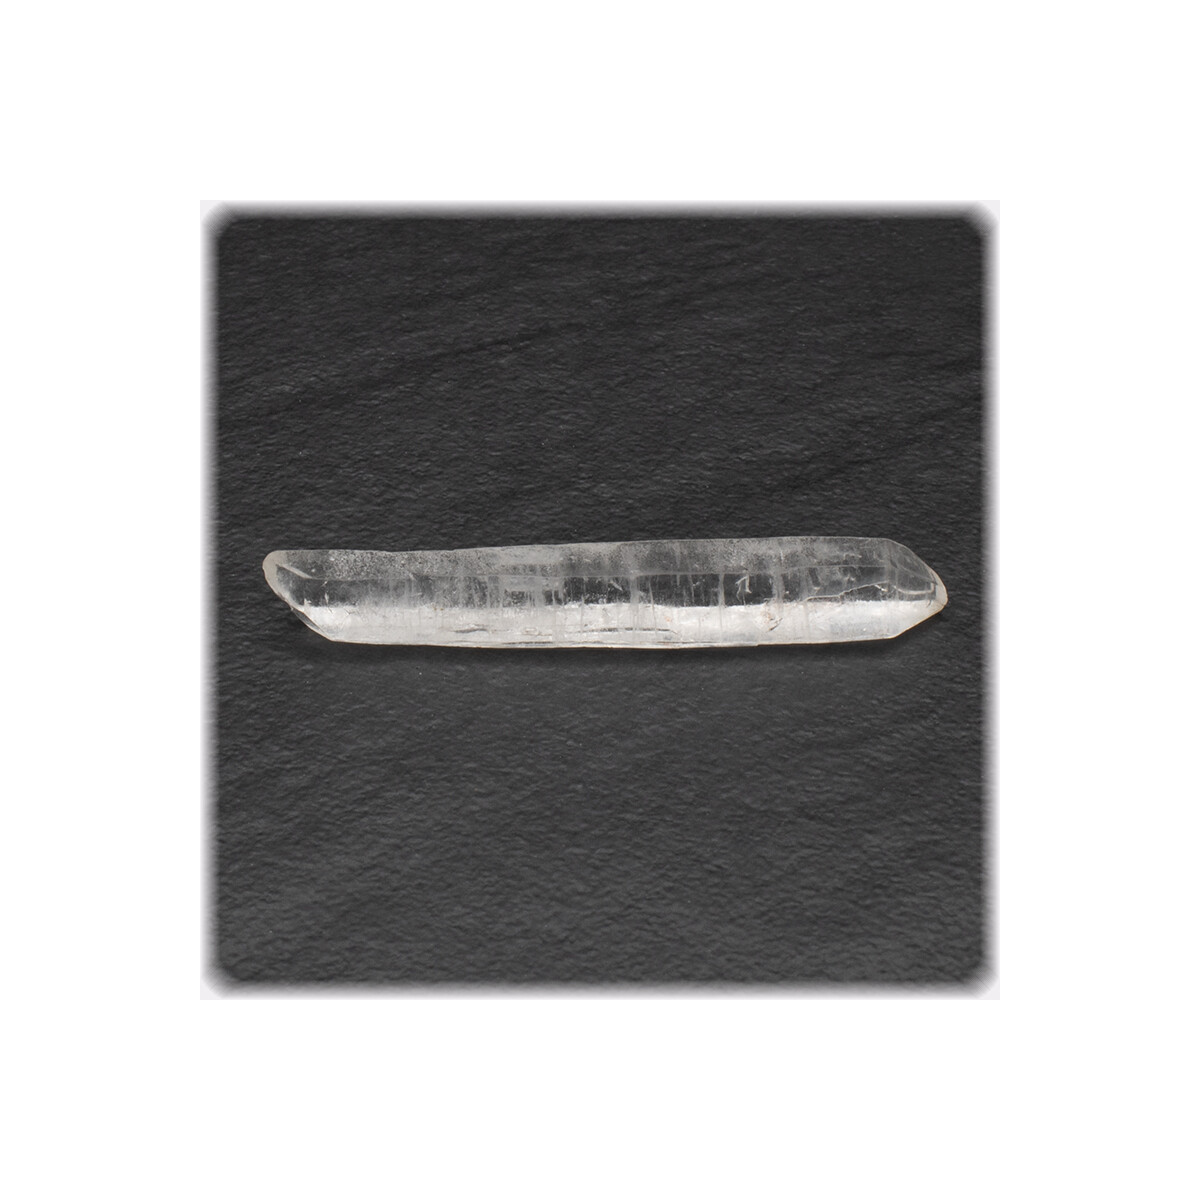 Doppel-Ender Bergkristall Spitze / Länge 5,0 cm / 3g / Brasilien